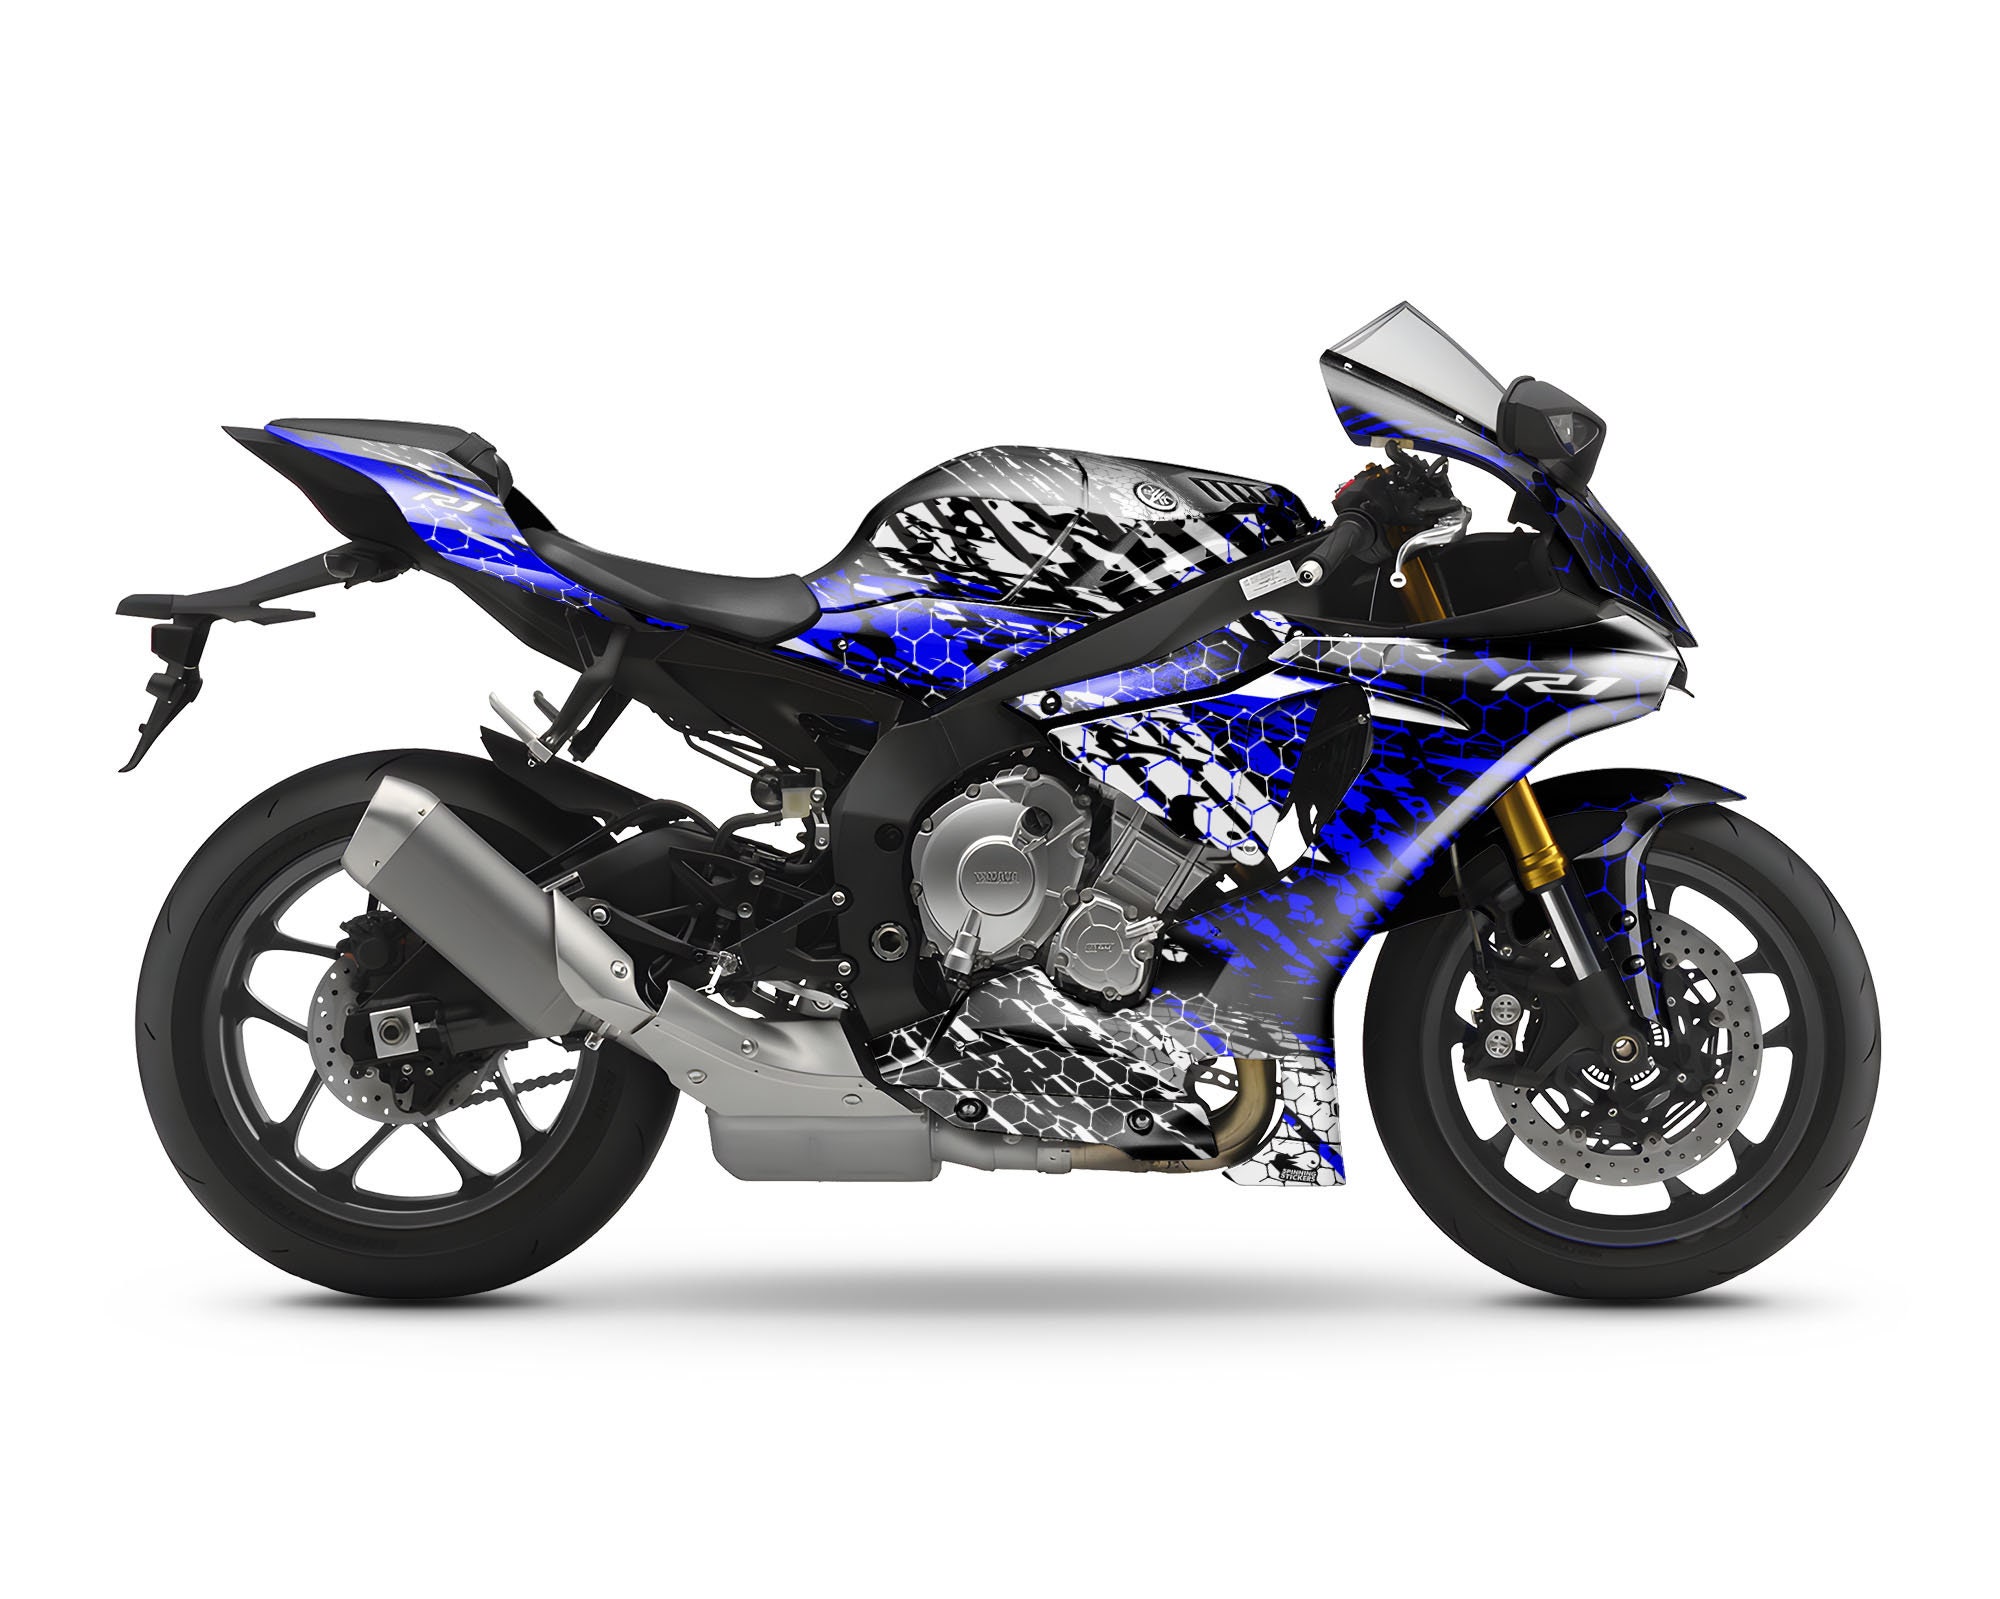 Yamaha R1 Motorrad Aufkleber Set für die Verkleidung - Bremssattel-Aufkleber